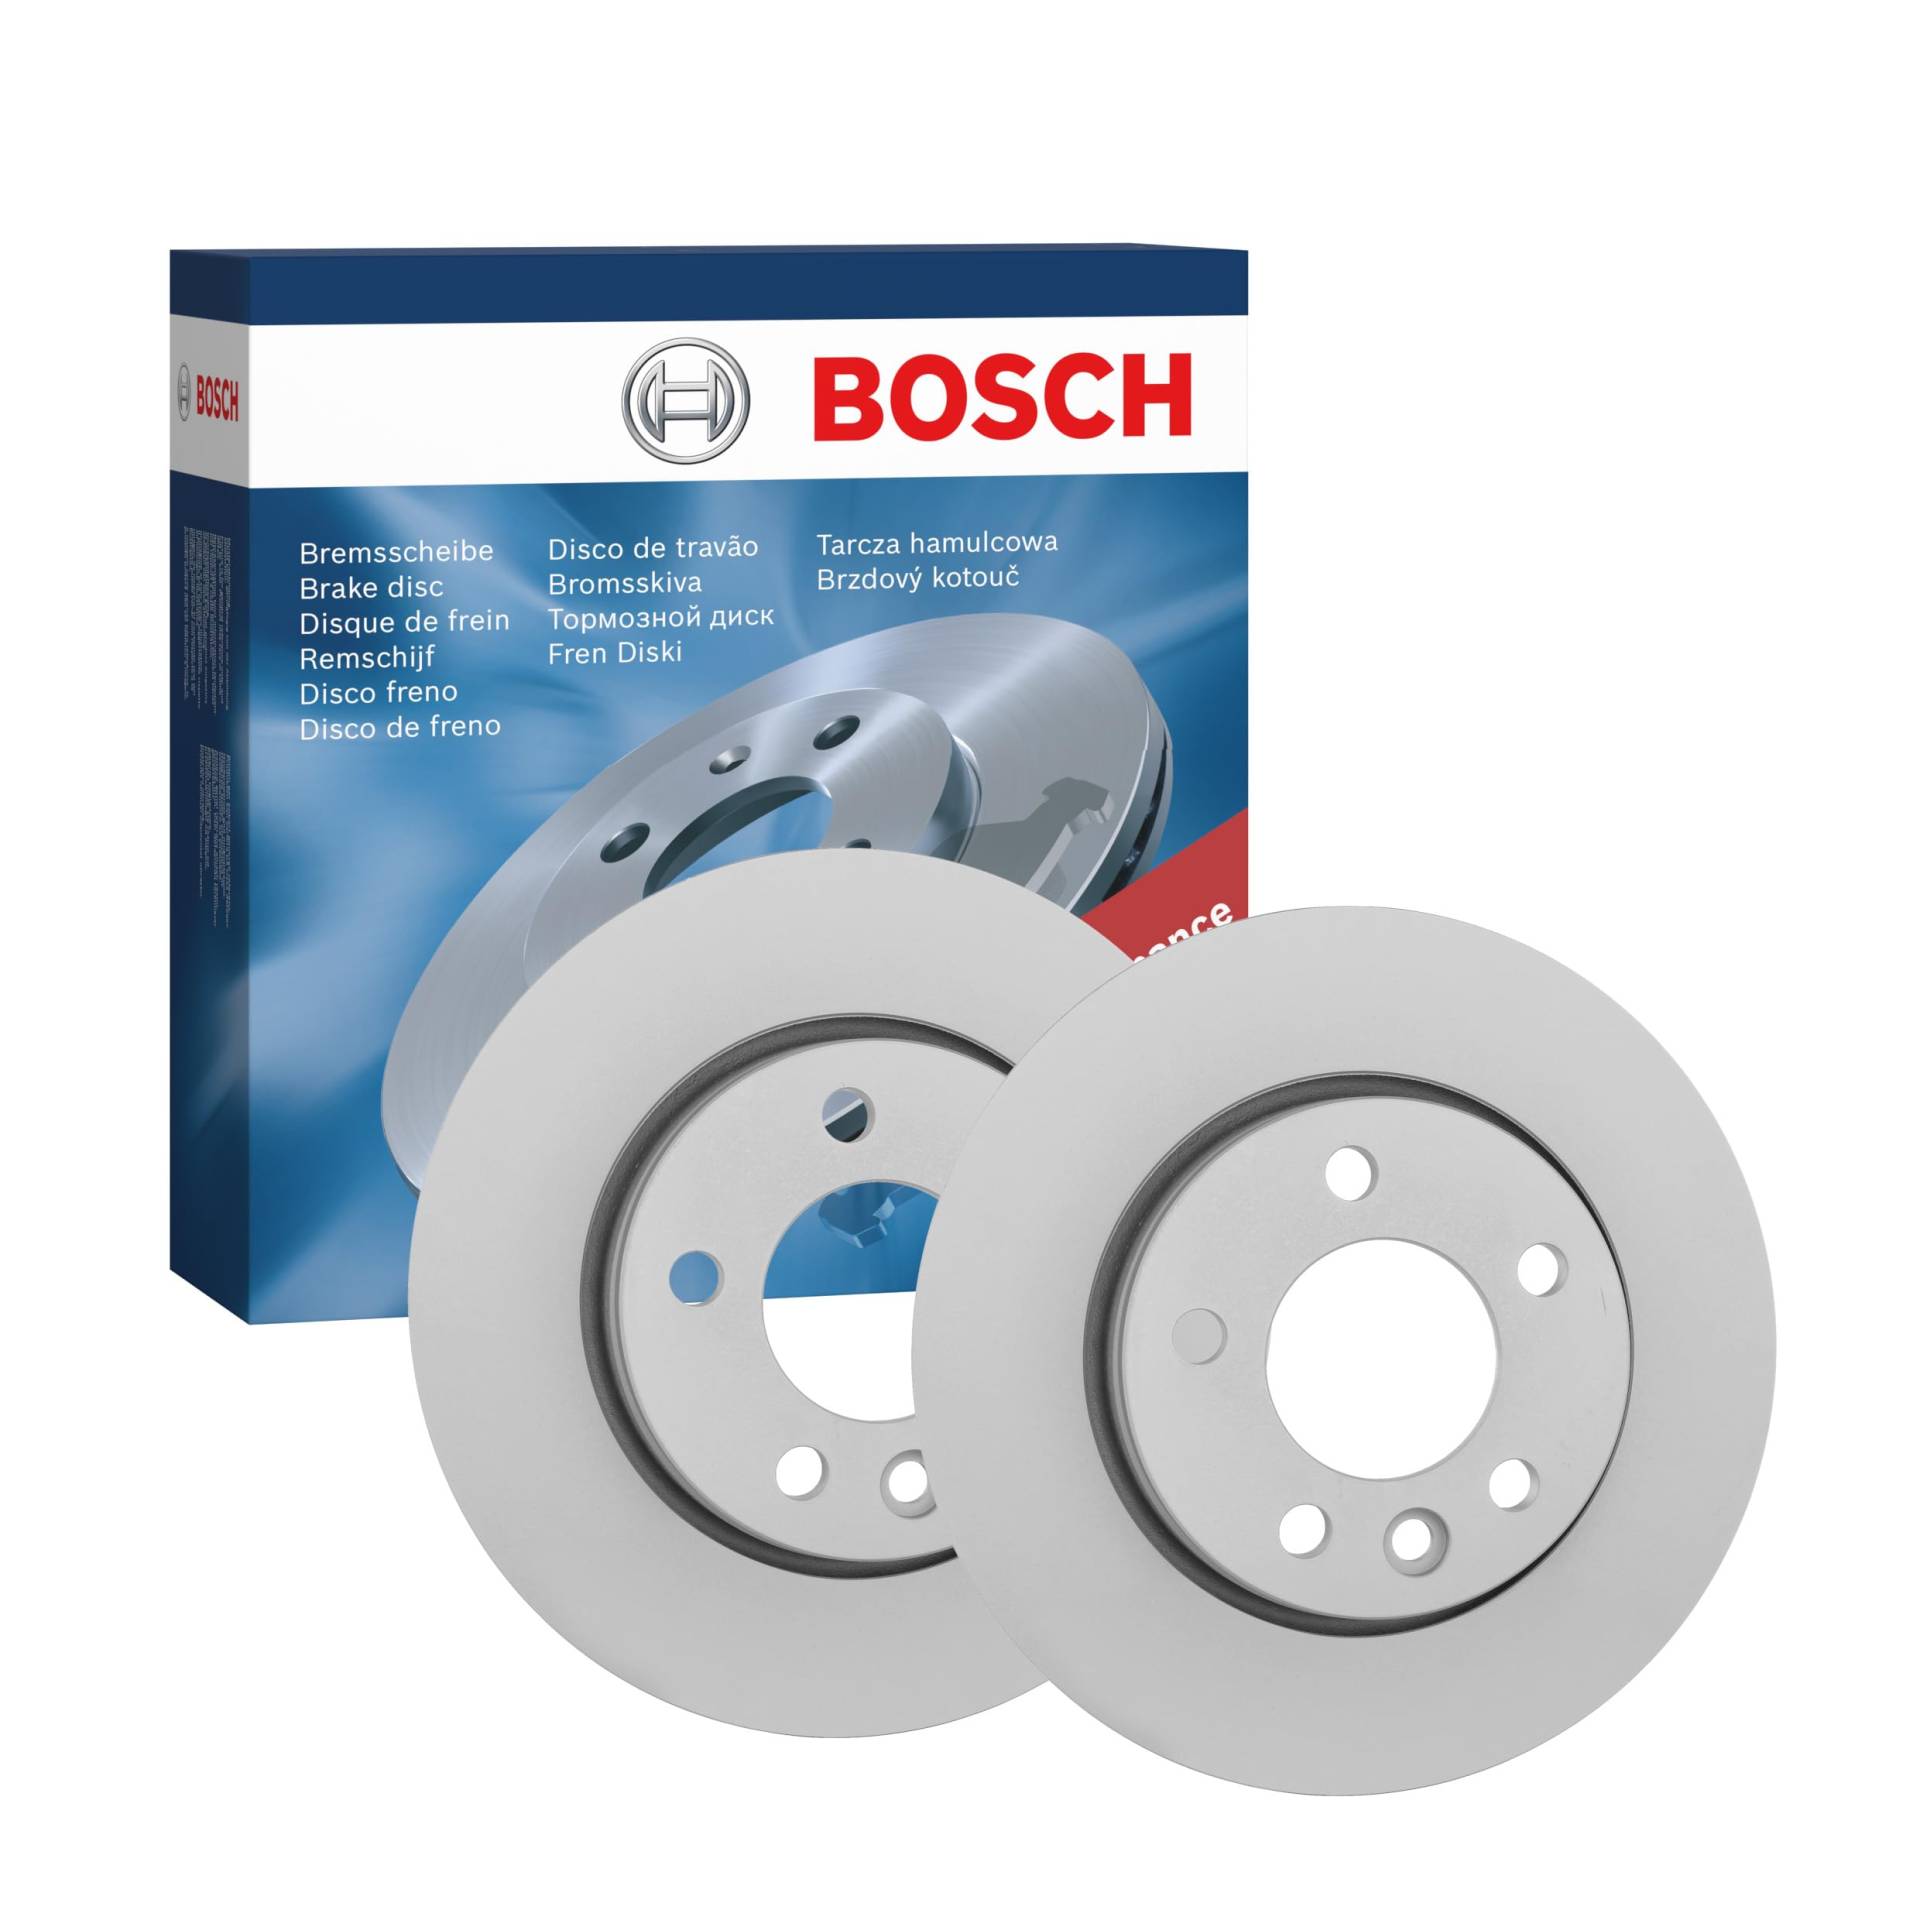 Bosch BD1027 Bremsscheiben - Hinterachse - ECE-R90 Zertifizierung - zwei Bremsscheiben pro Set von Bosch Automotive